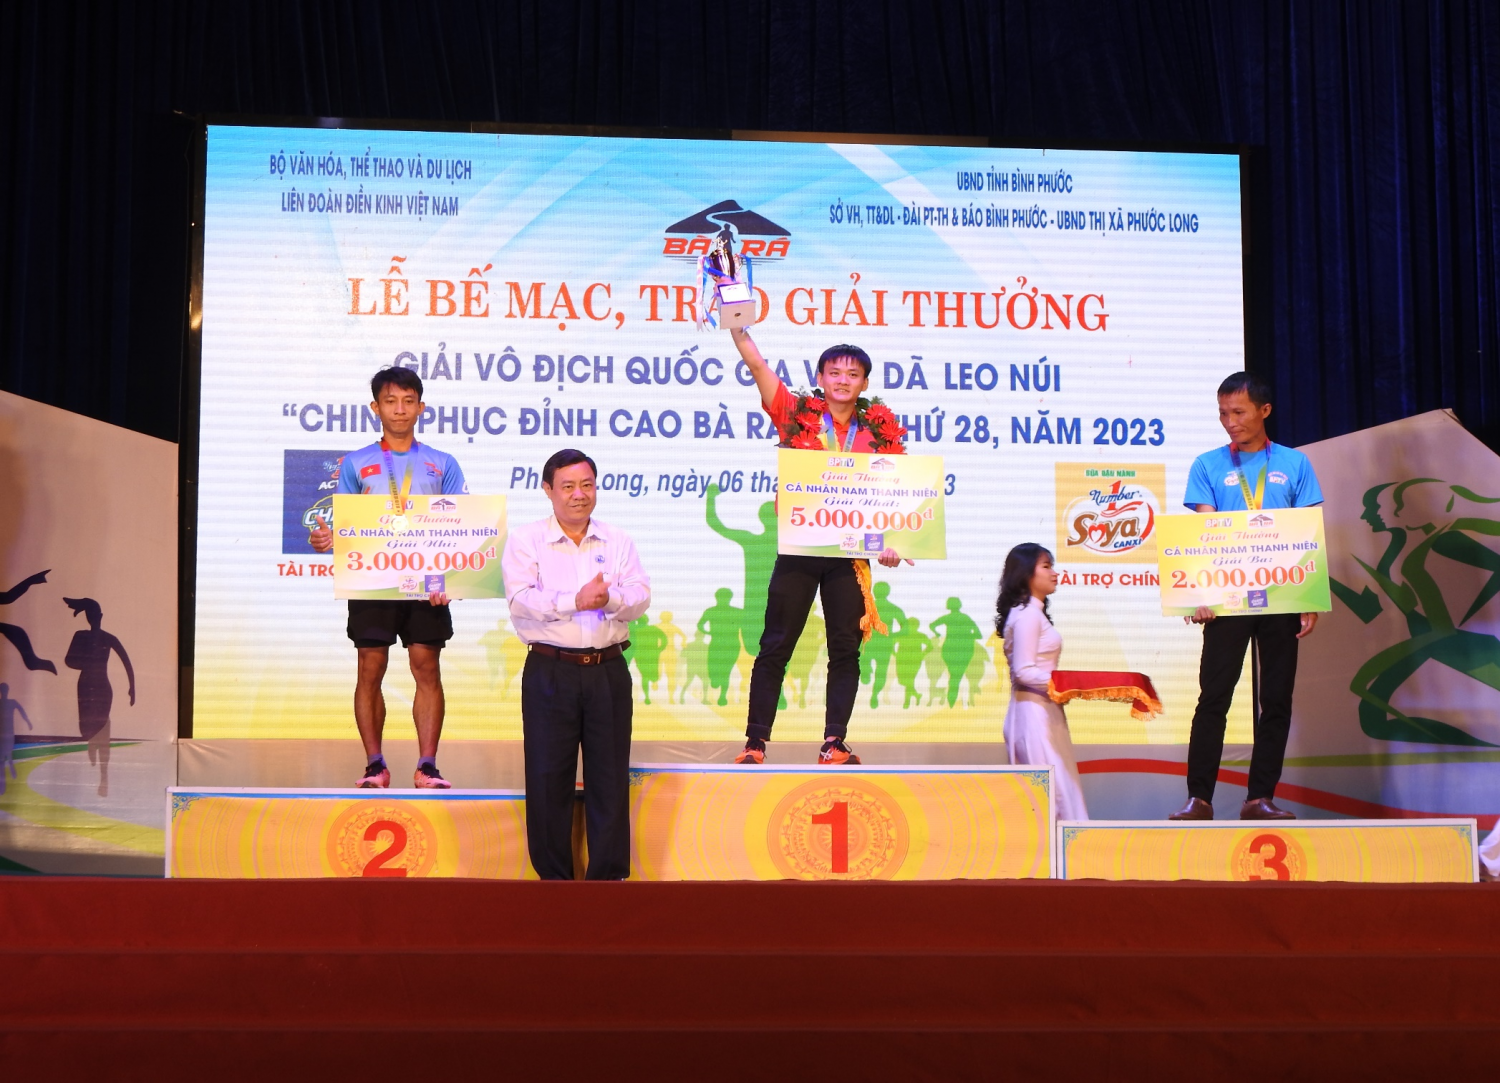 Giải Vô địch quốc gia Việt dã leo núi “Chinh phục đỉnh cao Bà Rá” lần thứ 28: Hội tụ đông đảo VĐV làng thể thao chuyên nghiệp